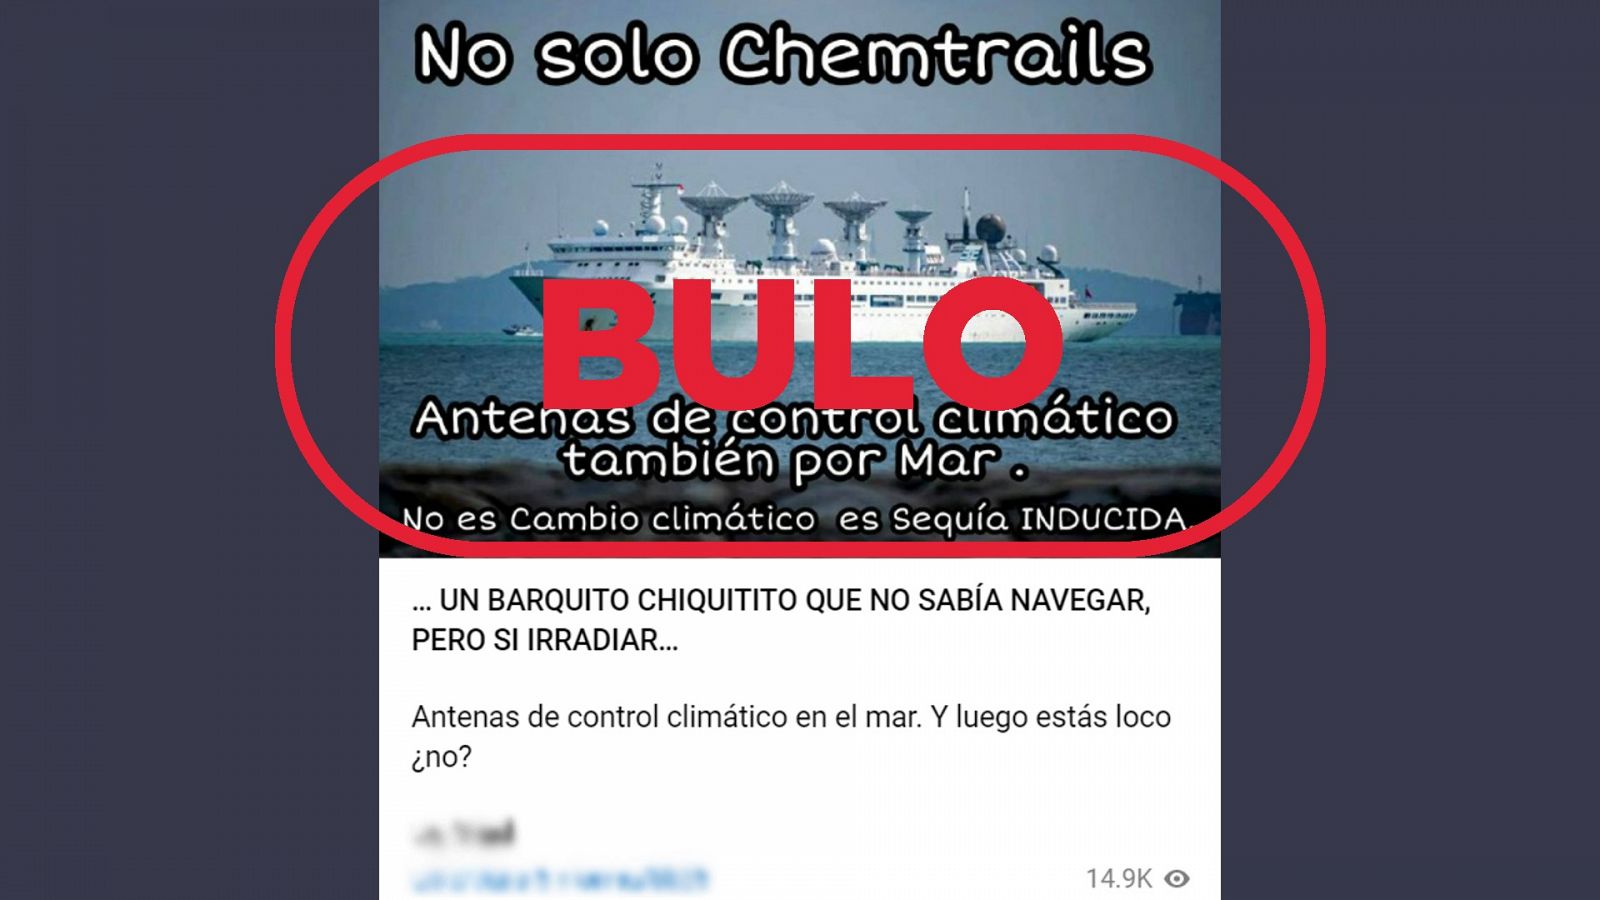 Bulo de Telegram que dice que el barco de la imagen tiene 'antenas de control climático'. Con el sello bulo.